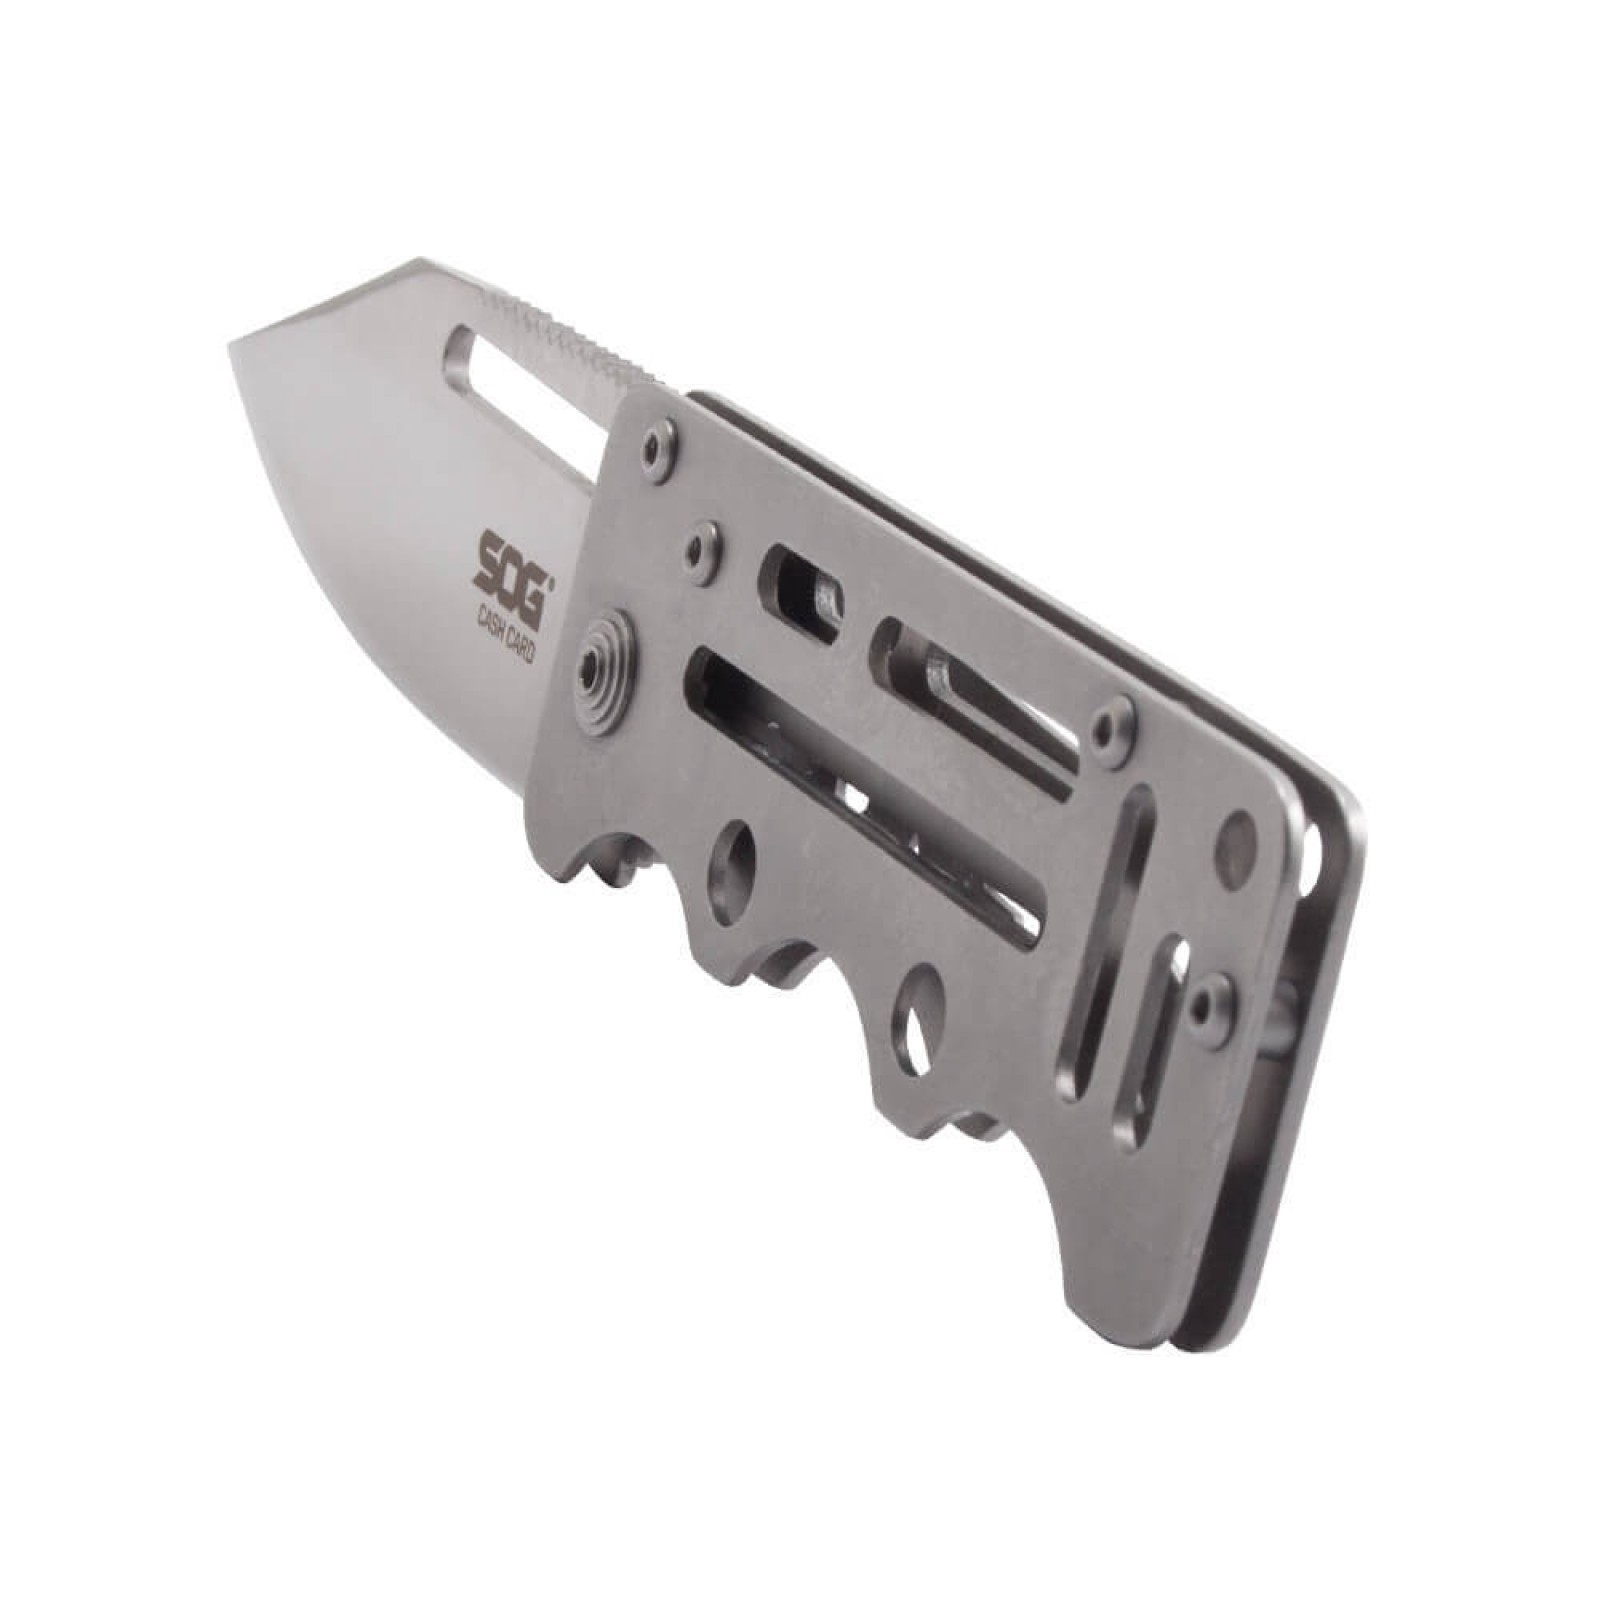 фото Складной нож cash card money clip - sog ez1, сталь 8cr13mov, рукоять нержавеющая сталь, серебристый